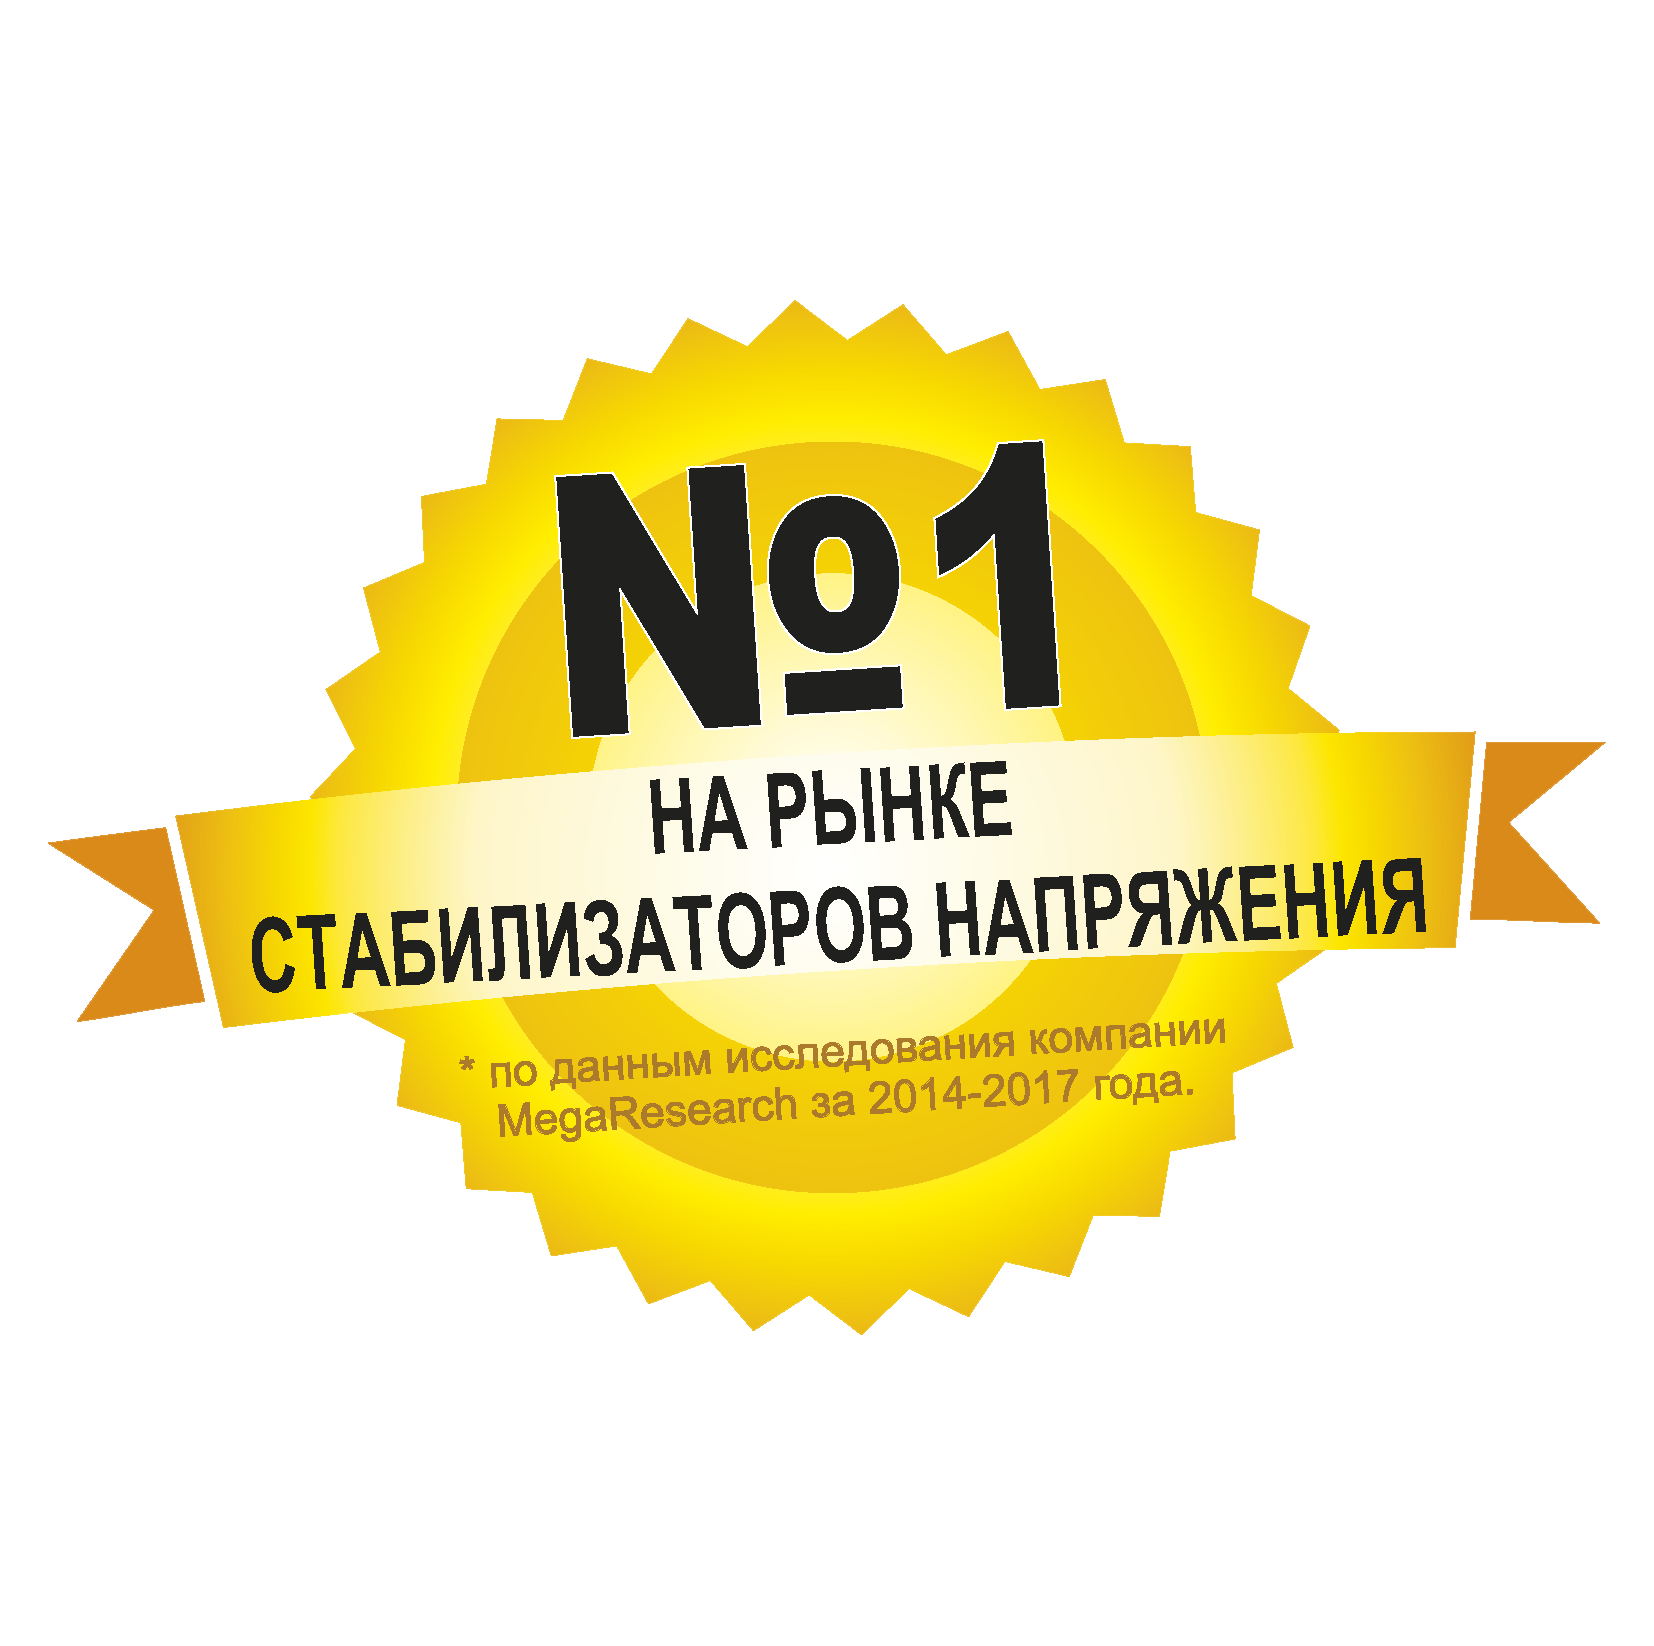 Магазин Ставрополь Официальный Сайт